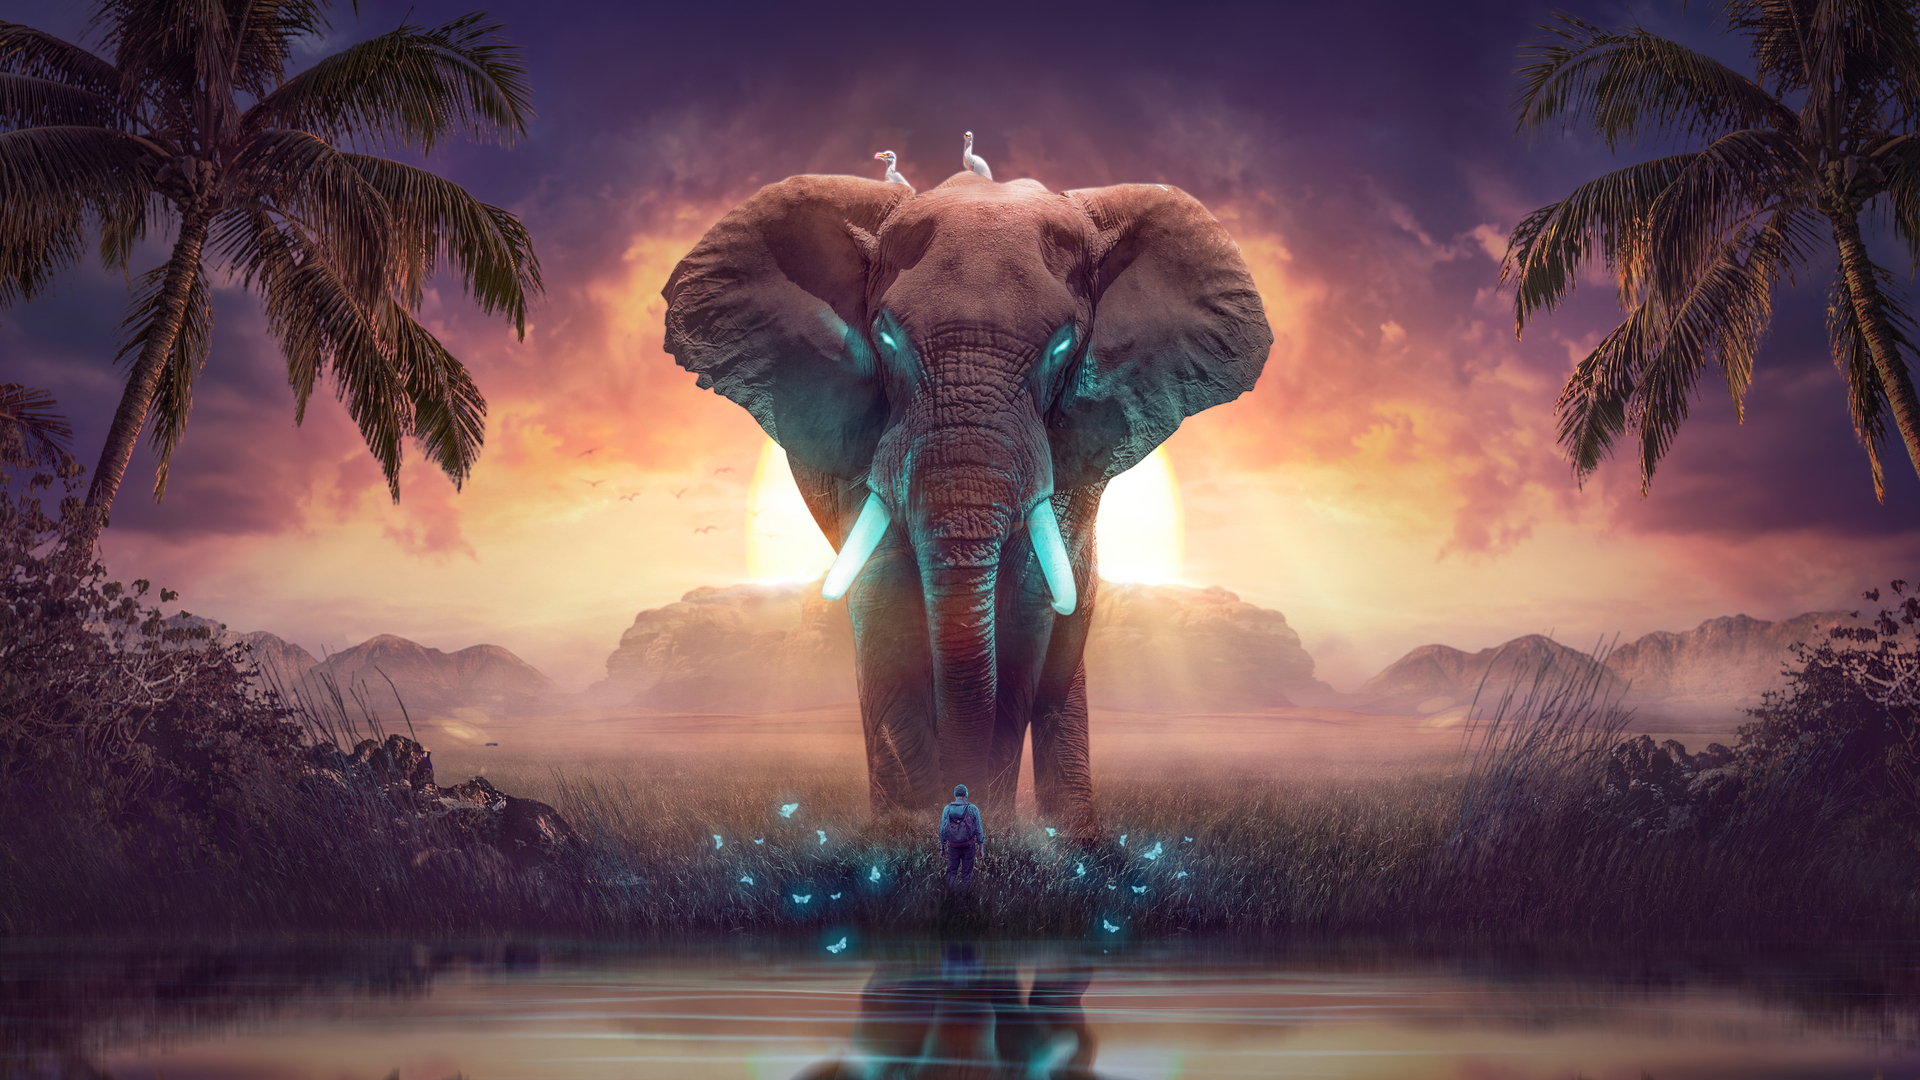 Giấc mơ voi: Bức ảnh này đưa bạn vào một thế giới giấc mơ, với những chú voi to lớn và hoang dã kể chuyện cho bạn nghe. Bạn sẽ cảm thấy mình đang đứng giữa vườn quốc gia, nghe những điệu nhạc của thiên nhiên và choáng ngợp trước vẻ đẹp của thế giới tự nhiên.